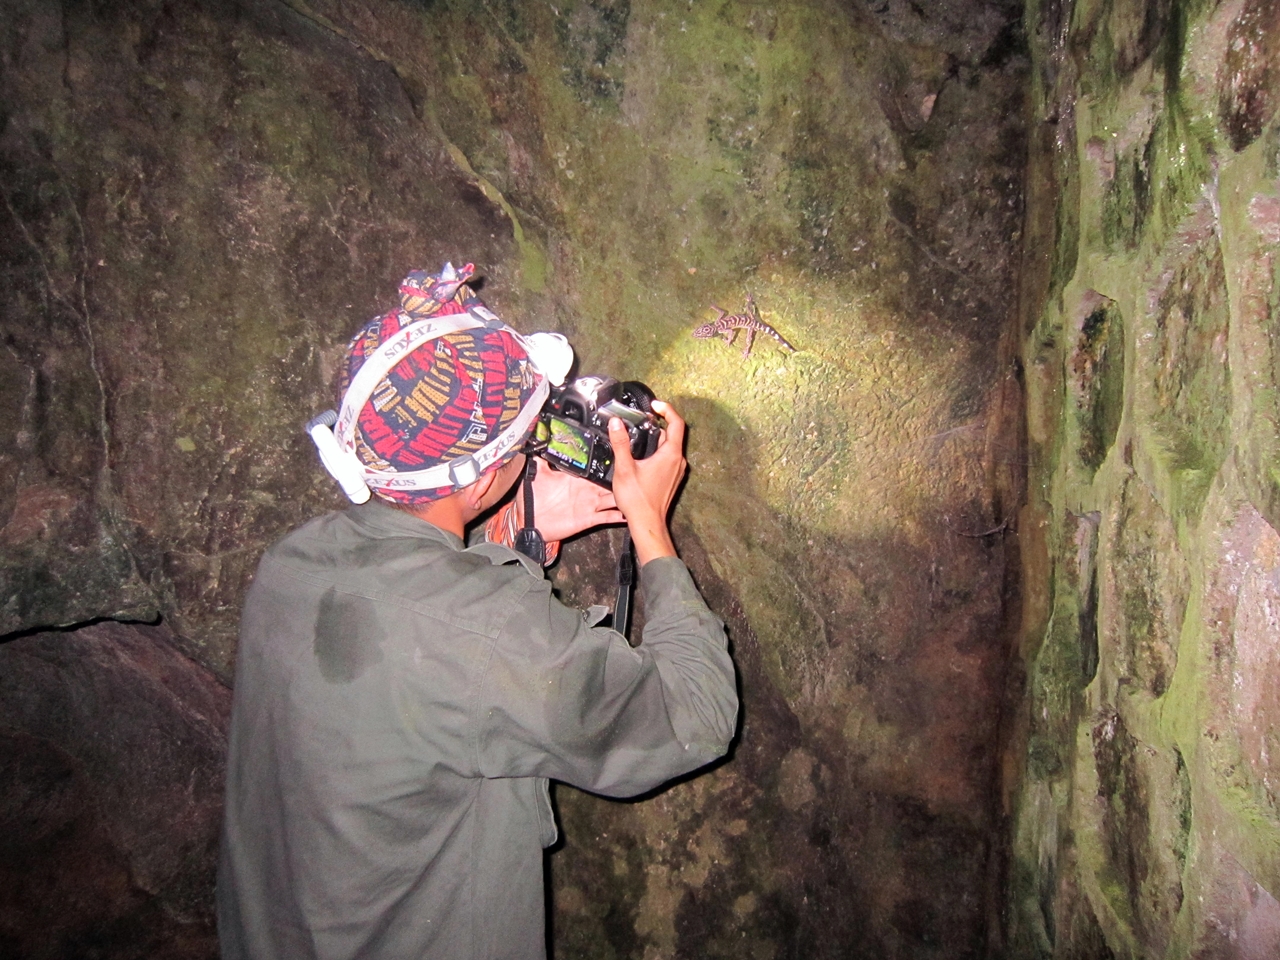 Để có được những bức ảnh mẫu quý giá về thạch thùng mí Cát Bà, Hải có thể mất hàng chục đêm leo núi, mò mẫm trong các hang động tối om mà không hoặc chưa có nhiều người đặt chân đến. (Tháng 7/2015).